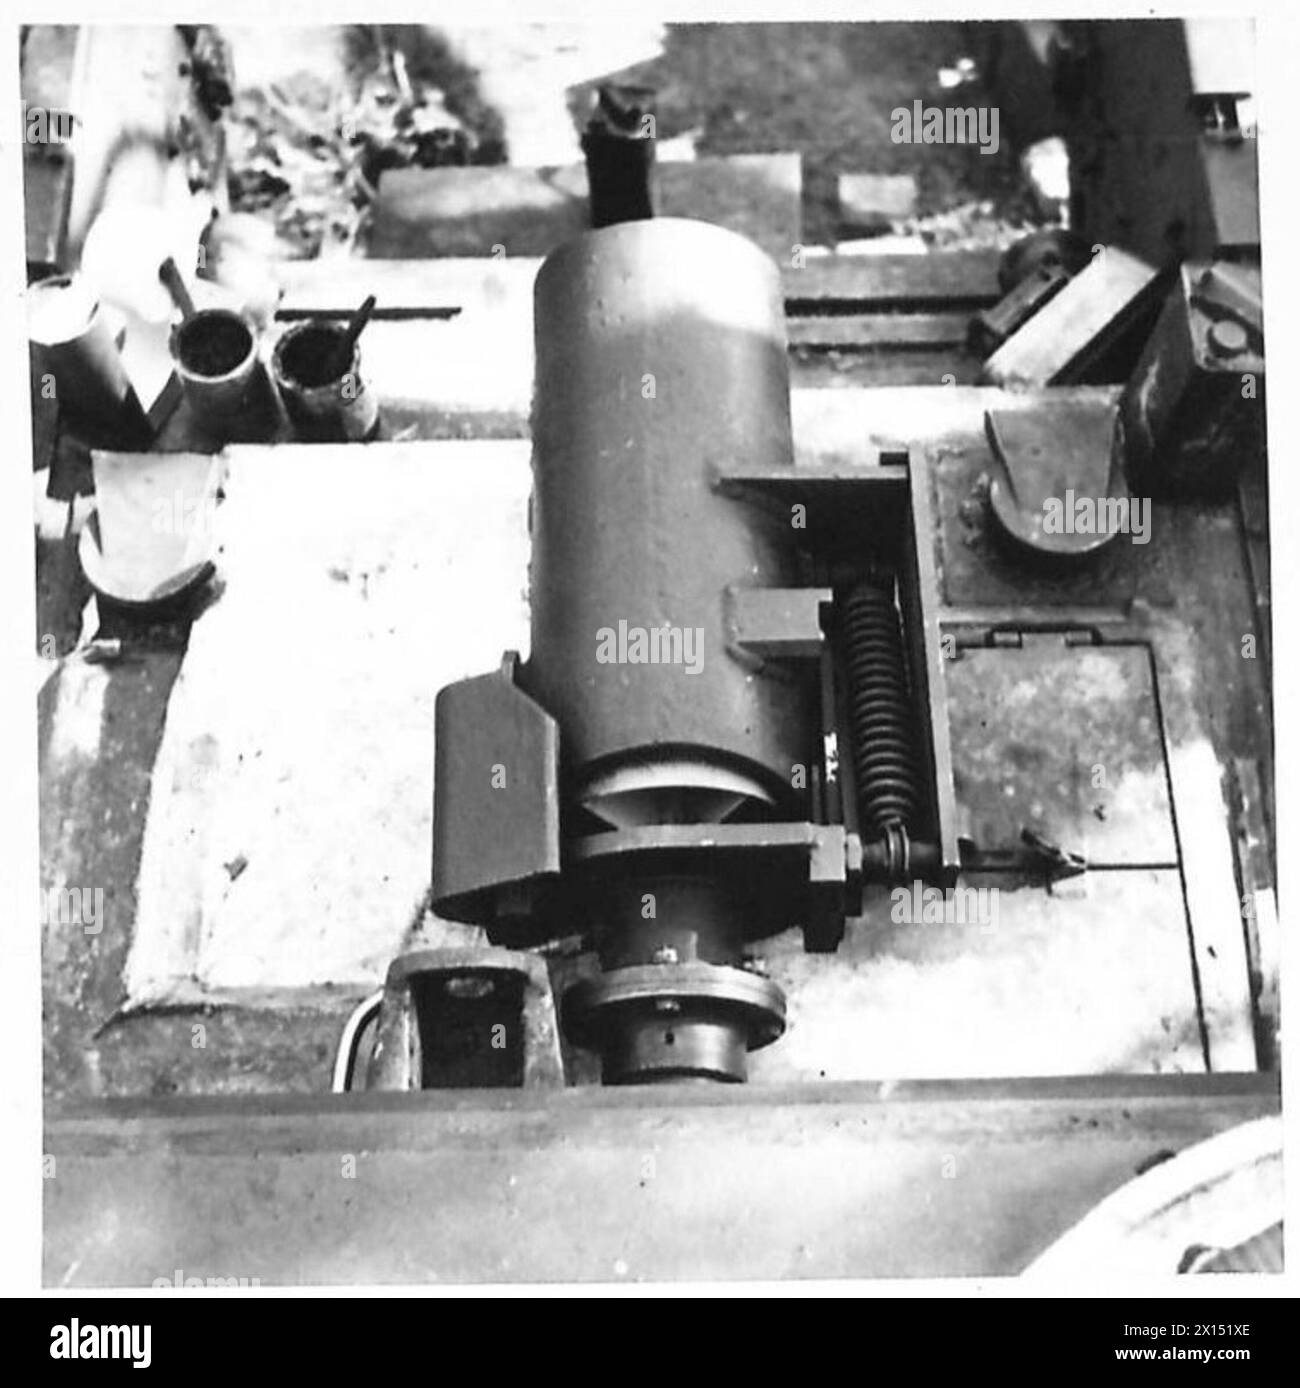 PRÉPARATIFS POUR LE DEUXIÈME FRONT - les chars Churchill pour la 79e Escadron R.ES. 3e Division sont équipés d'une arme secrète, le mortier Petard Spigot. Il est comme un grand PIAT et tire une bombe de 40 lb, un buster de fortification. Les photogs montrent diverses vues du canon et de la bombe, comment le canon est chargé de l'intérieur du cockpit et aussi la bombe en position British Army Banque D'Images